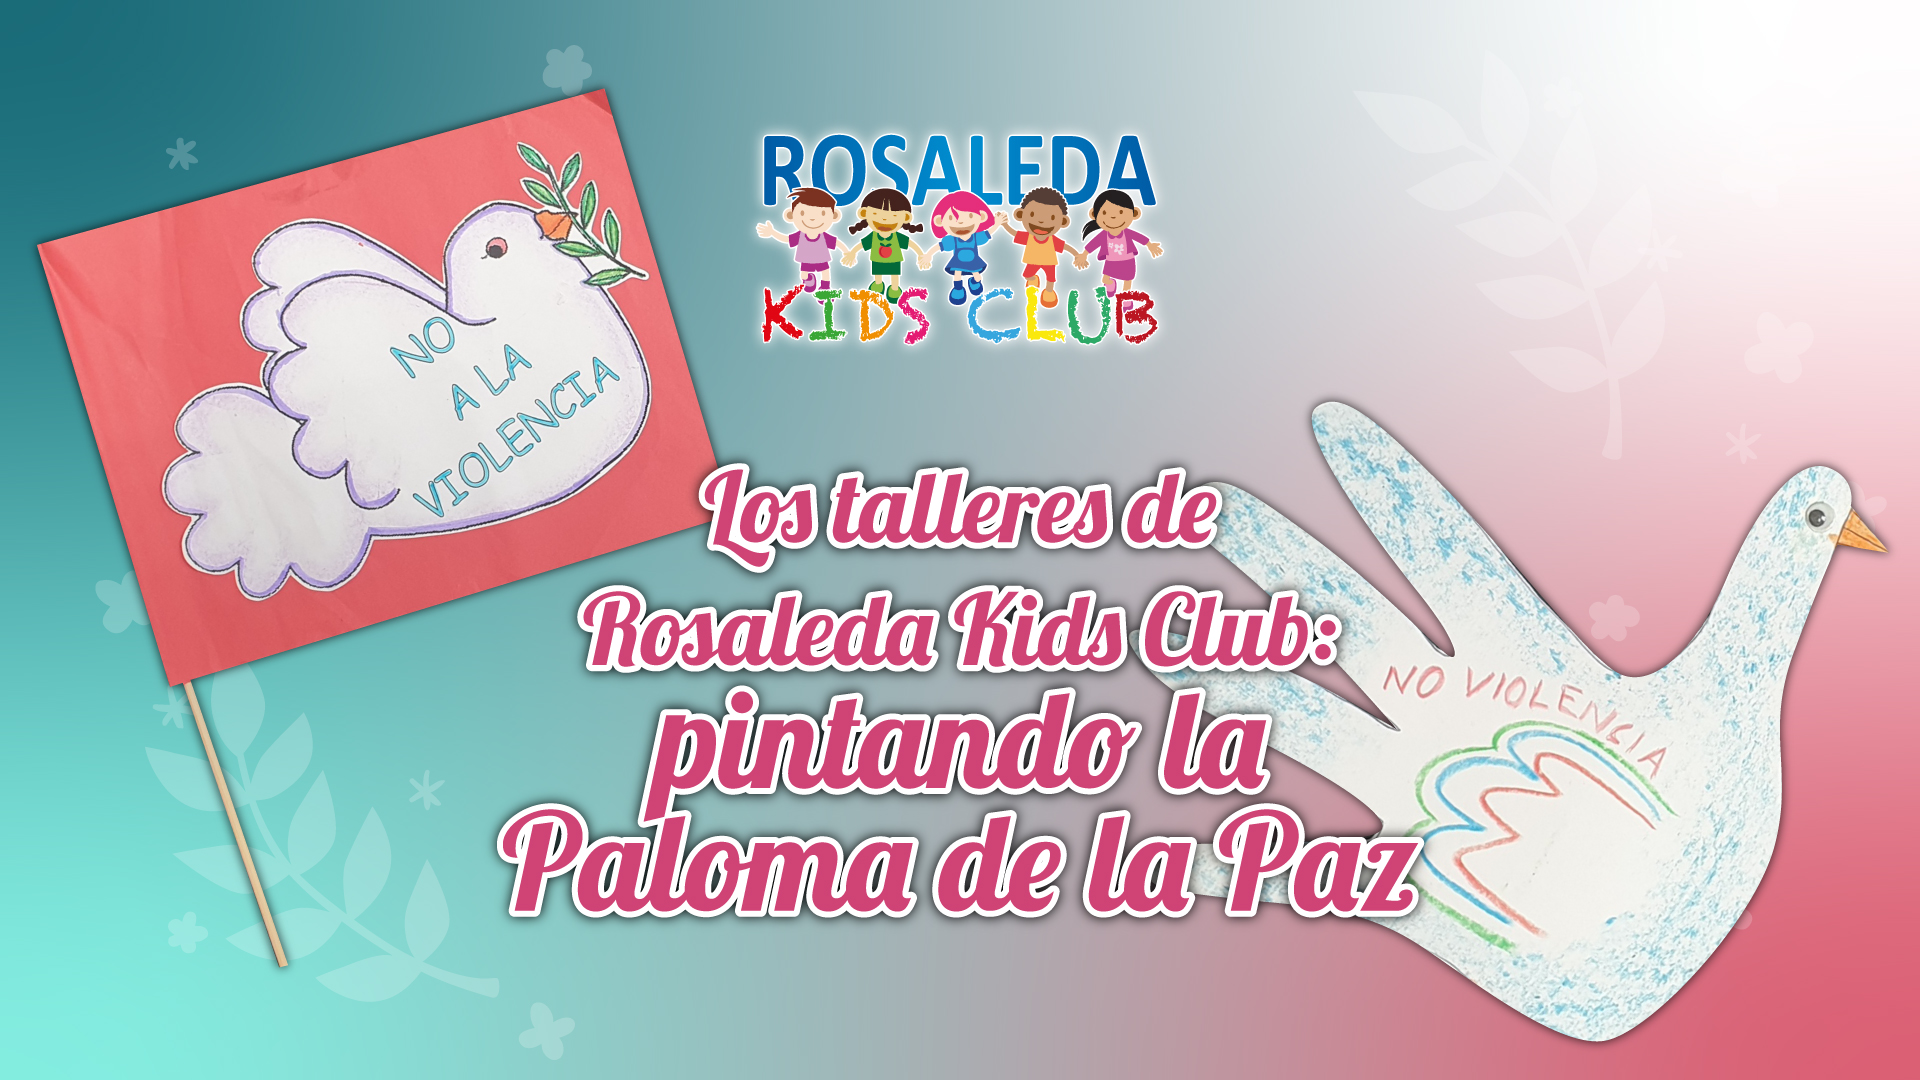 Rosaleda Kids Club: la paloma de la Paz